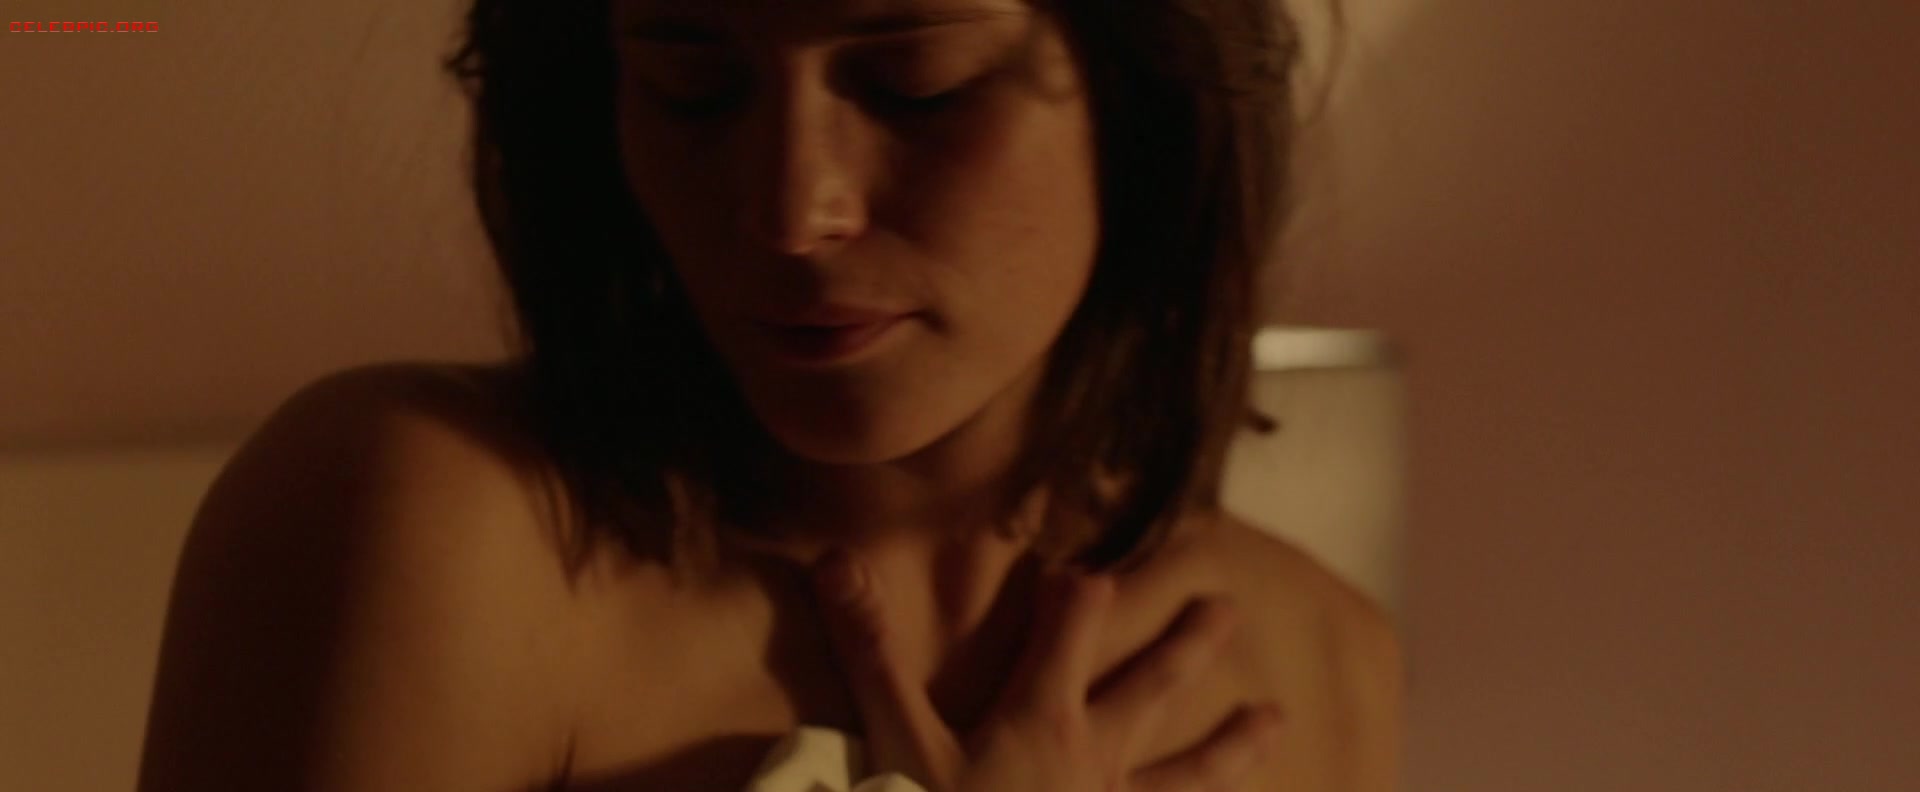 Gemma Arterton - The Escape 1080p (1) 1412.jpg